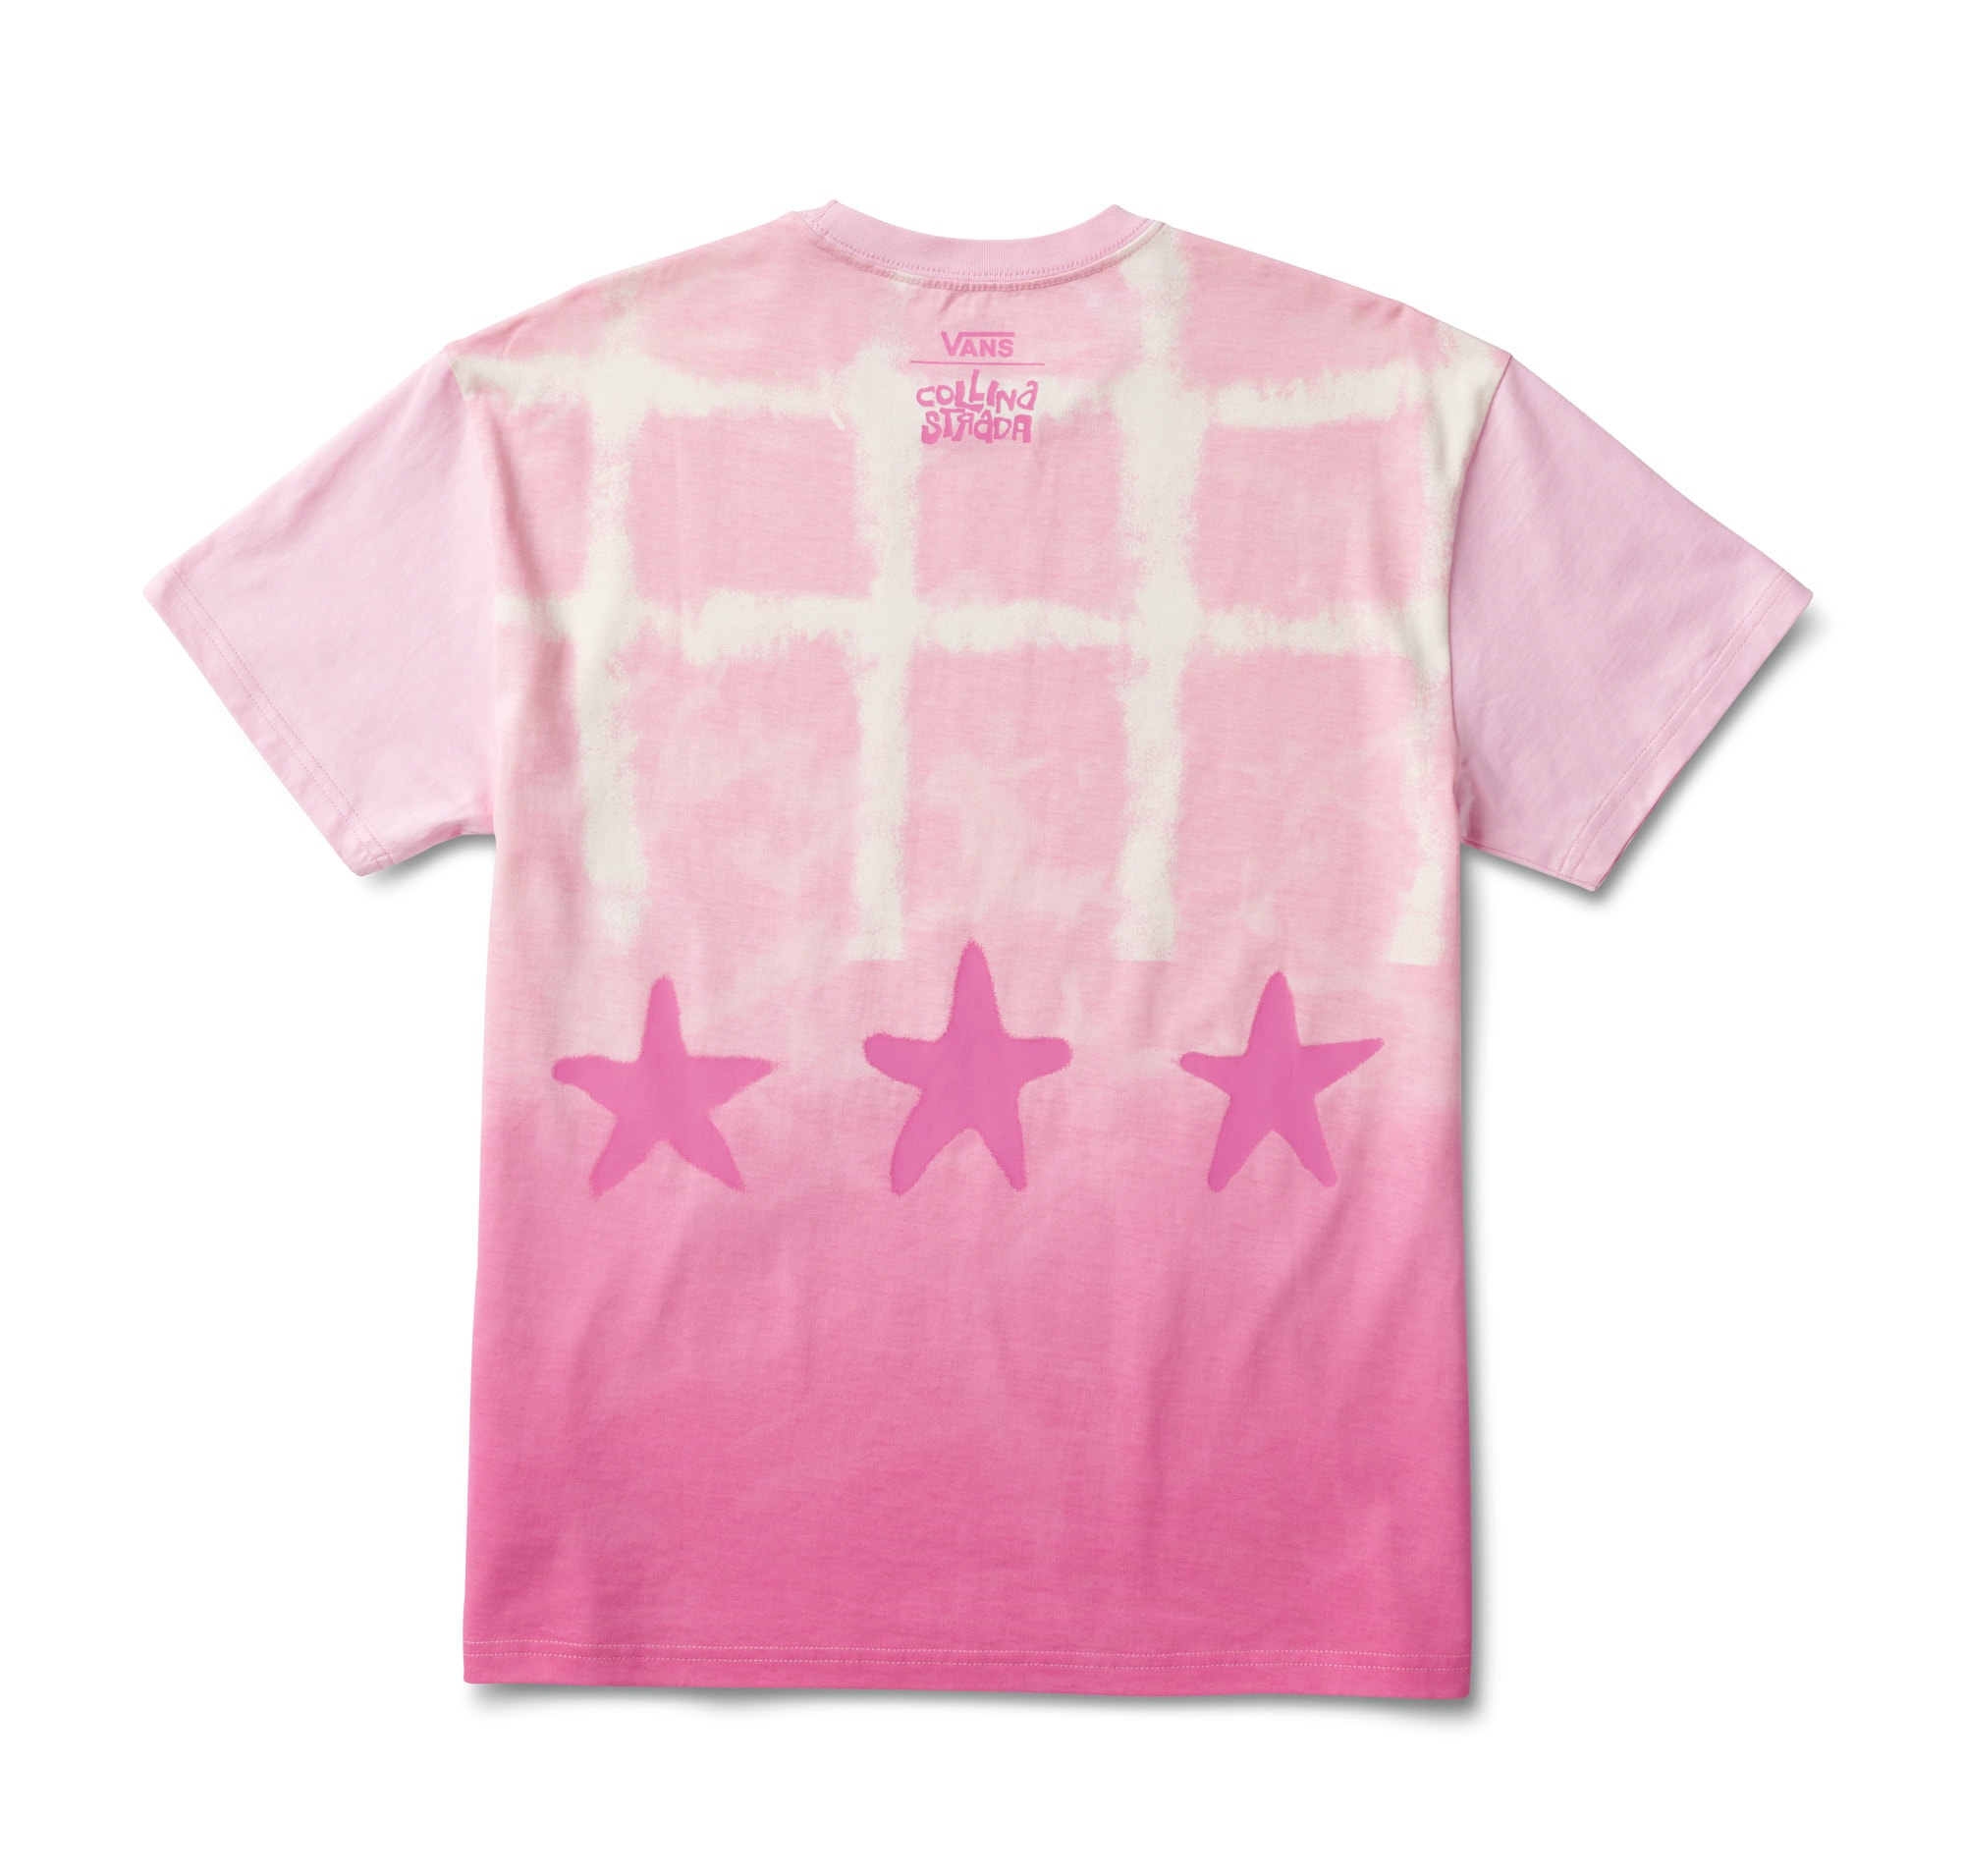 https://www.vans.ca/content/publish/caas/v1/media/287334/data/81ecc65cd630c01fbb64b2f715a0d6be/collina-pink-shirt.jpg